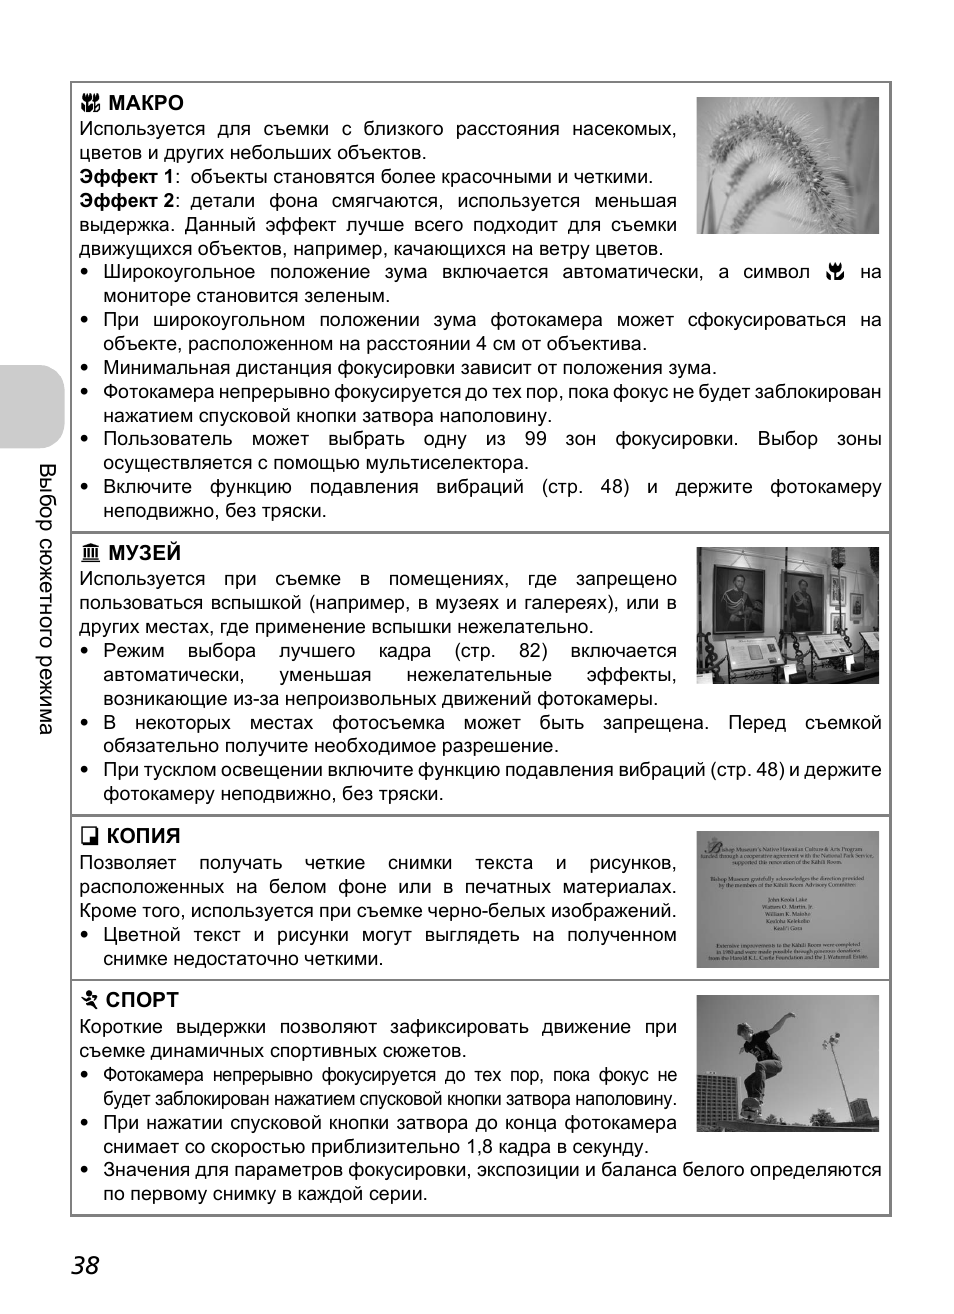 Инструкция по эксплуатации Nikon COOLPIX-P3 | Страница 40 / 161